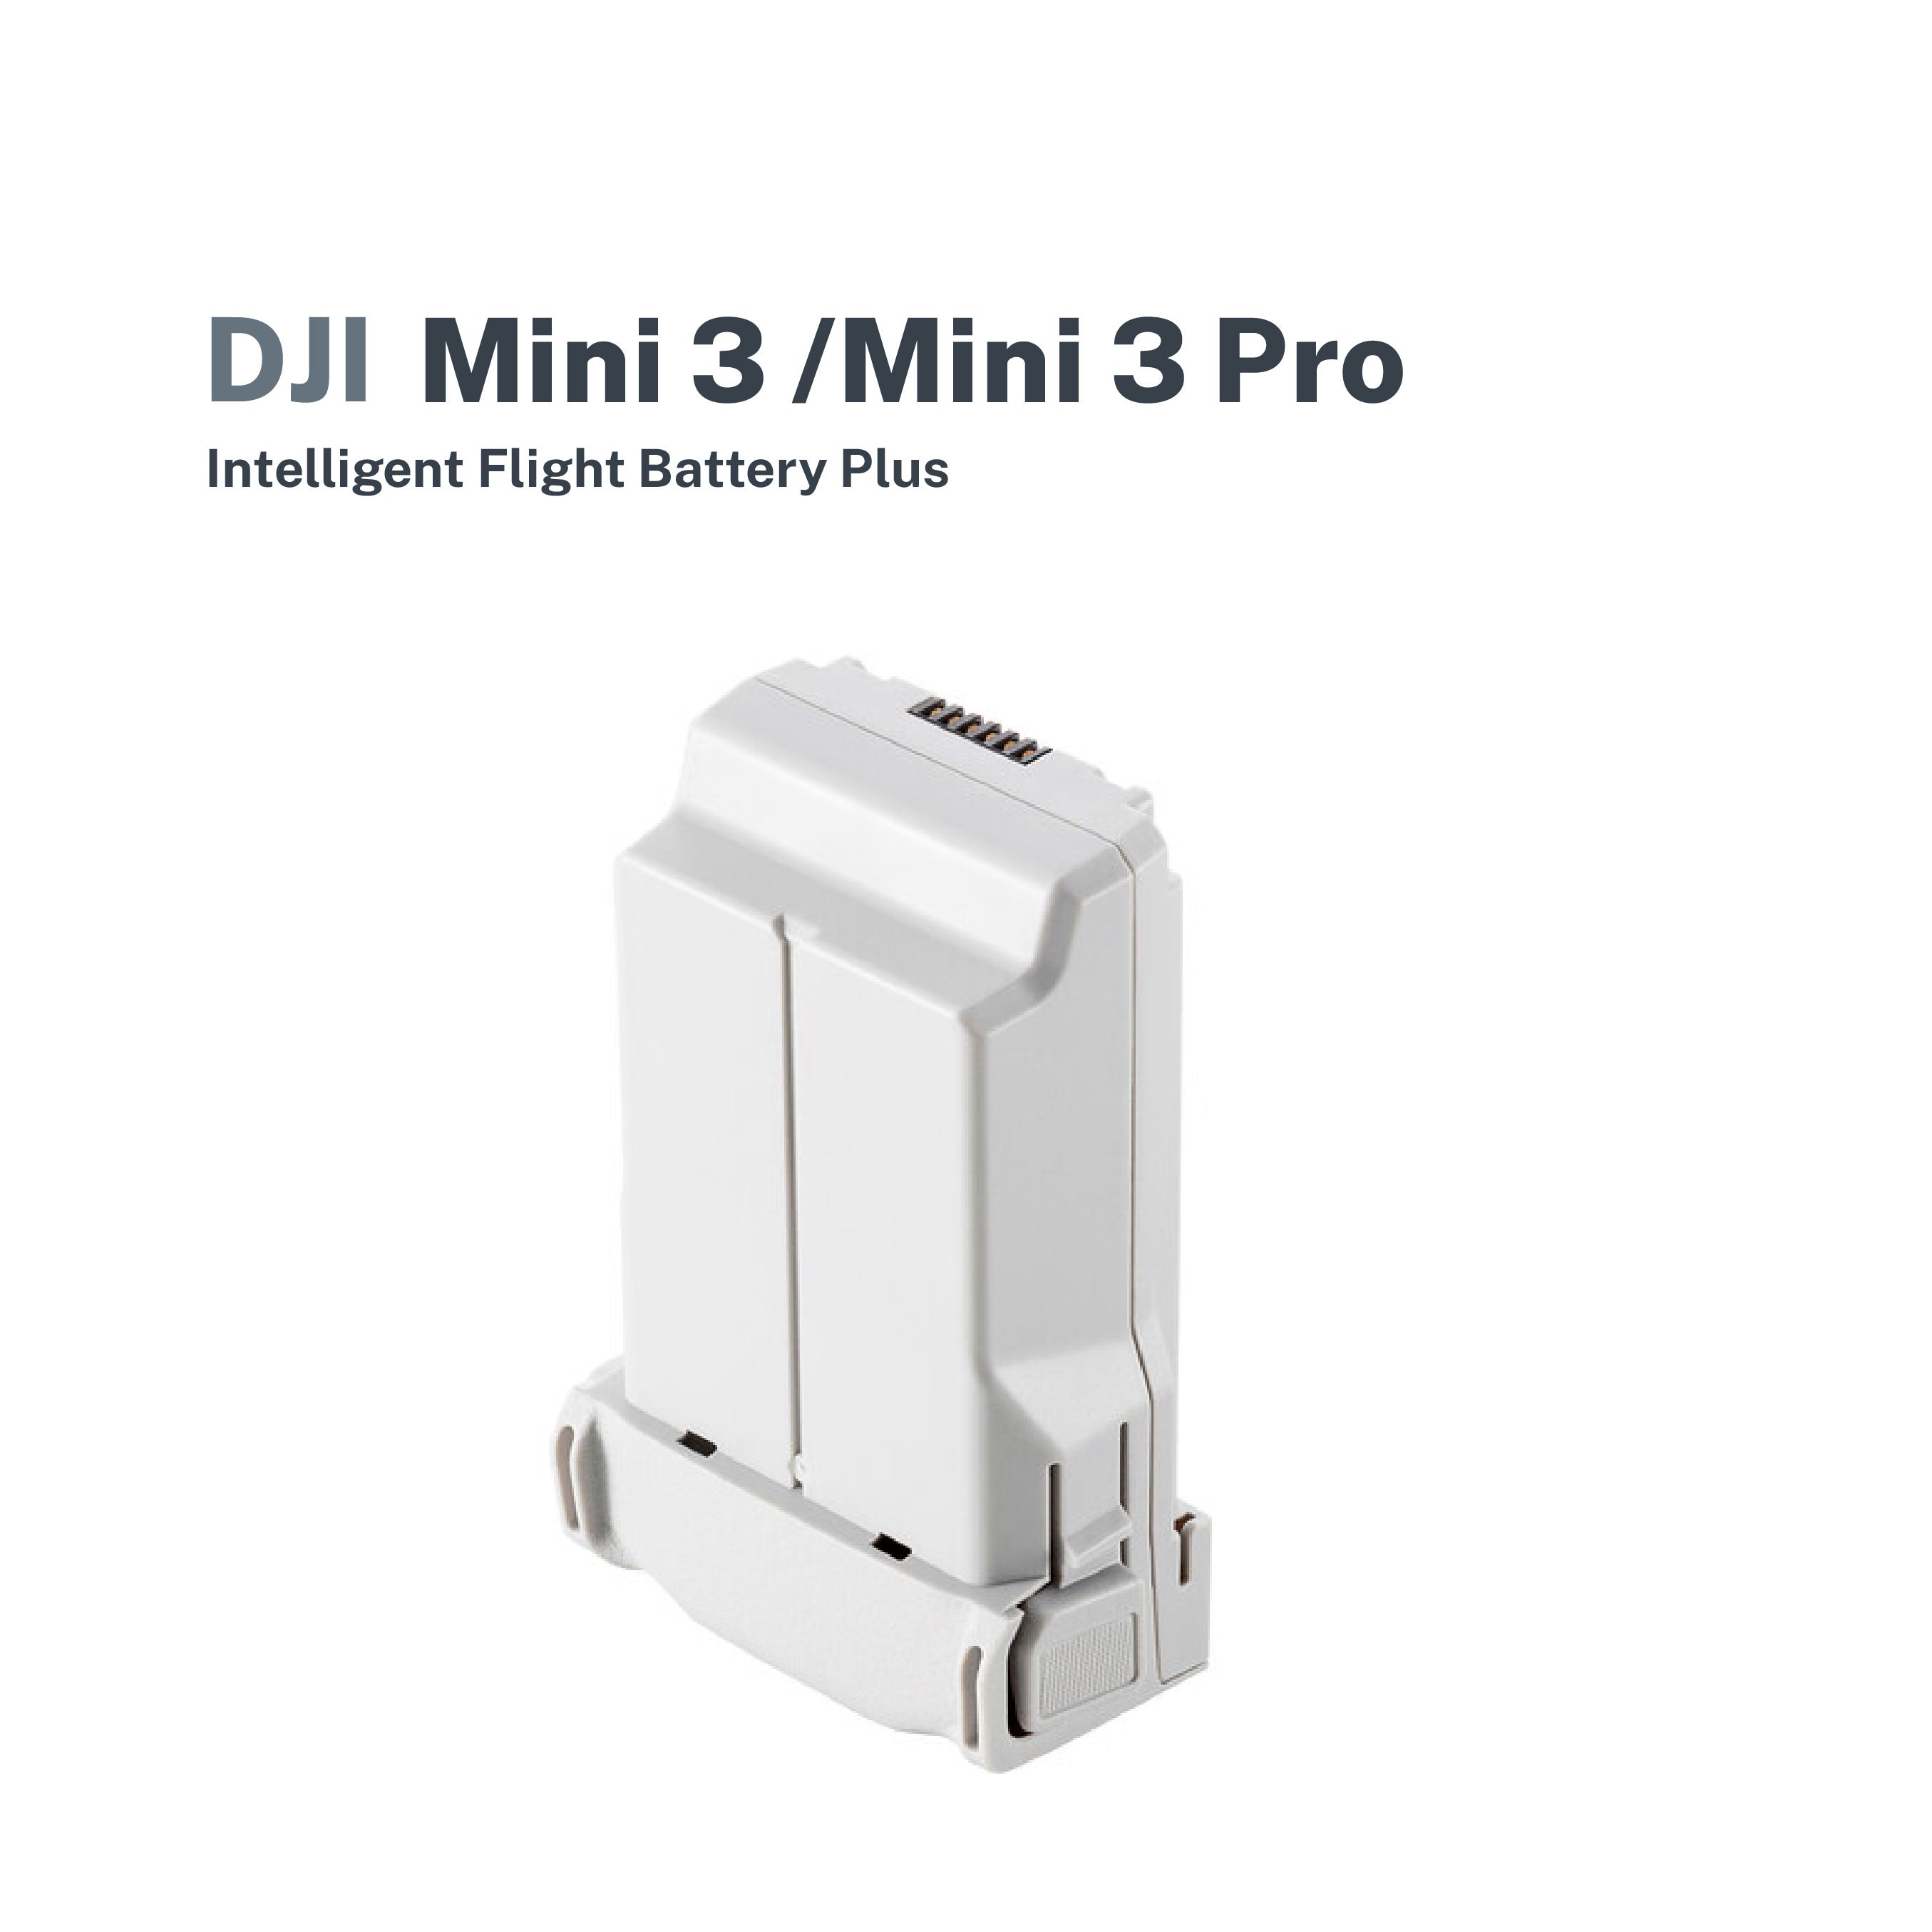 Buy DJI Mini 3 Series Intelligent Flight Battery - DJI Store